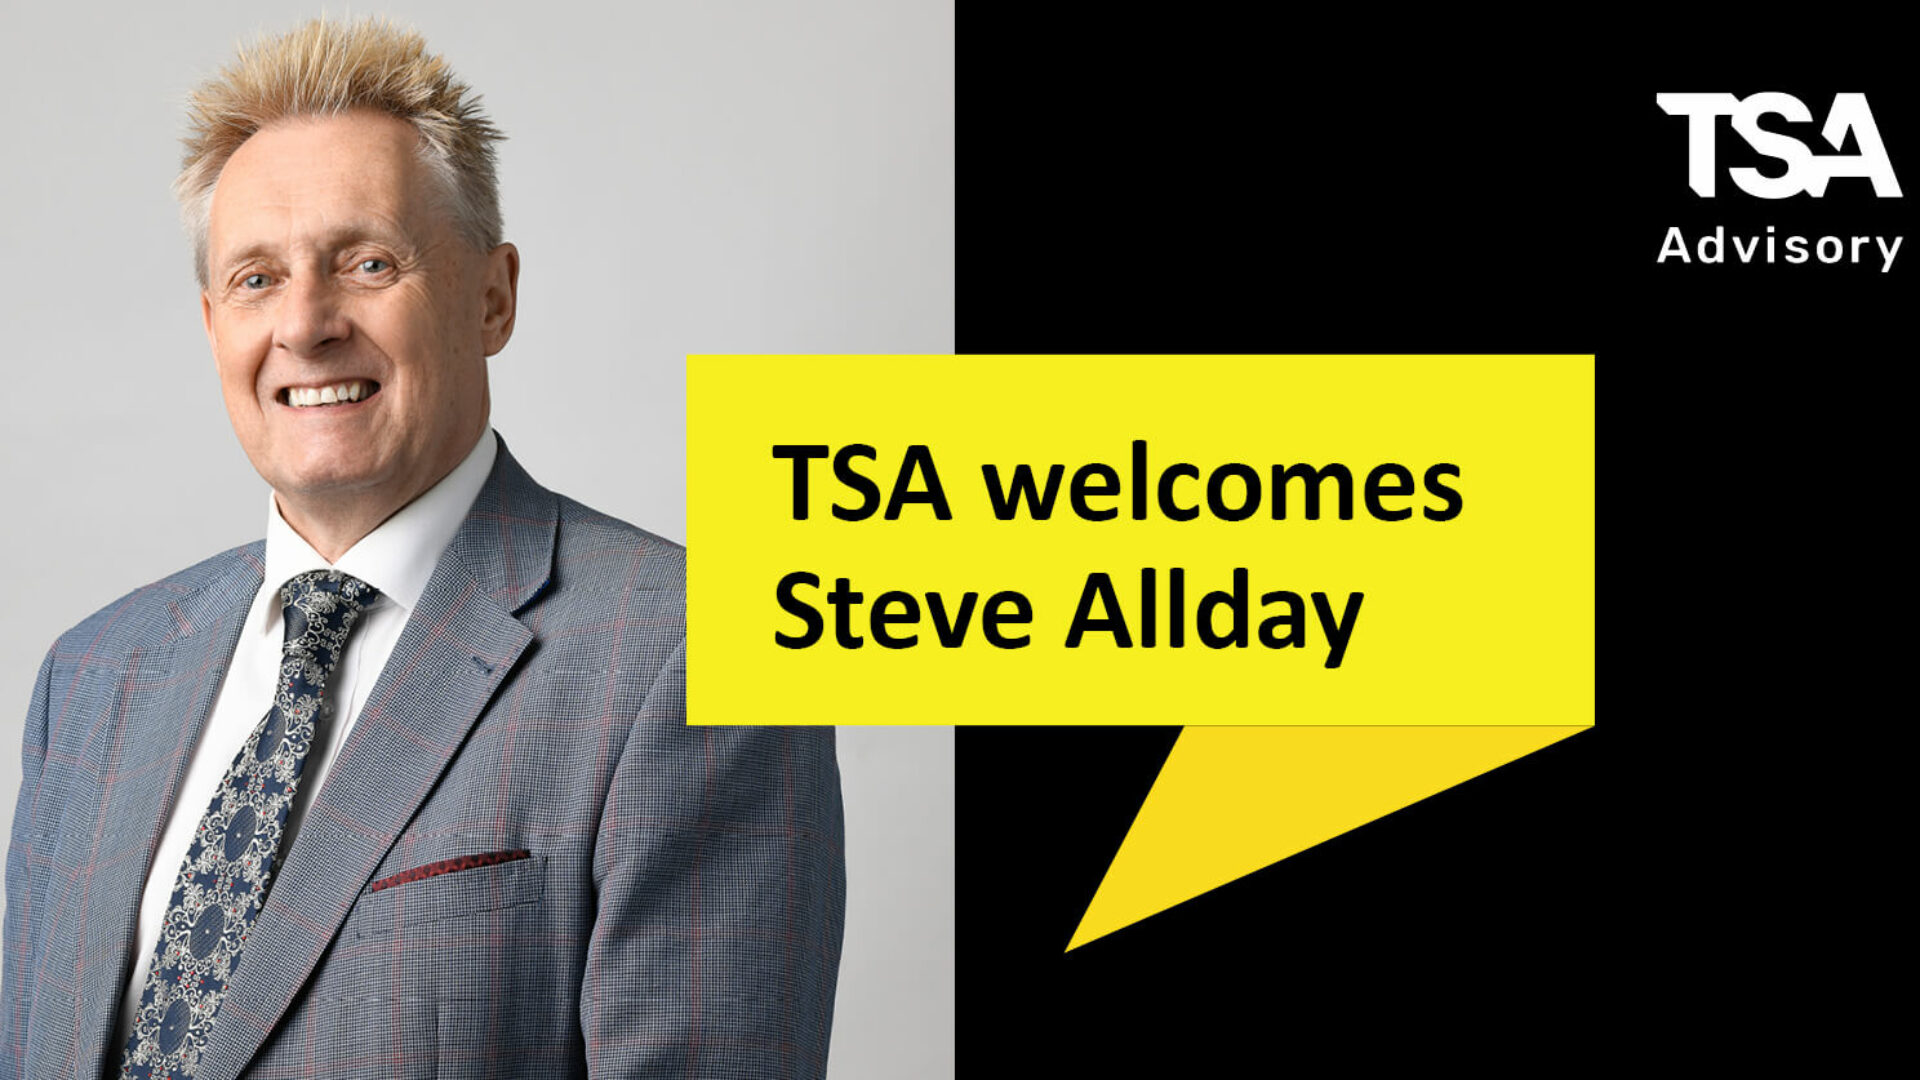 TSA Advisory welcomes Steve Allday